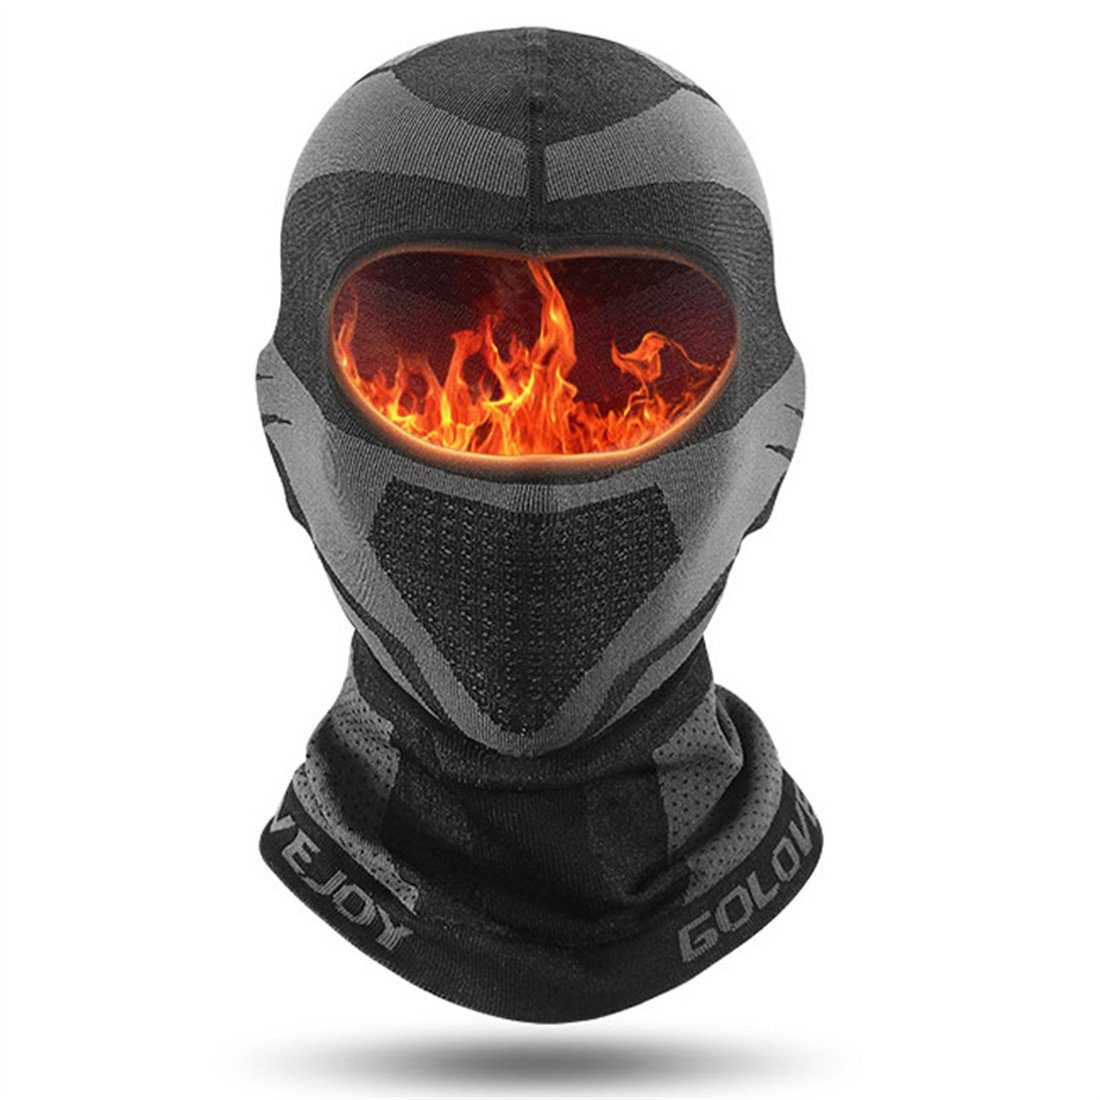 DÖRÖY Sturmhaube Warme Gesichtsmaske für den Winterradsport,unisex, winddichte Skimaske